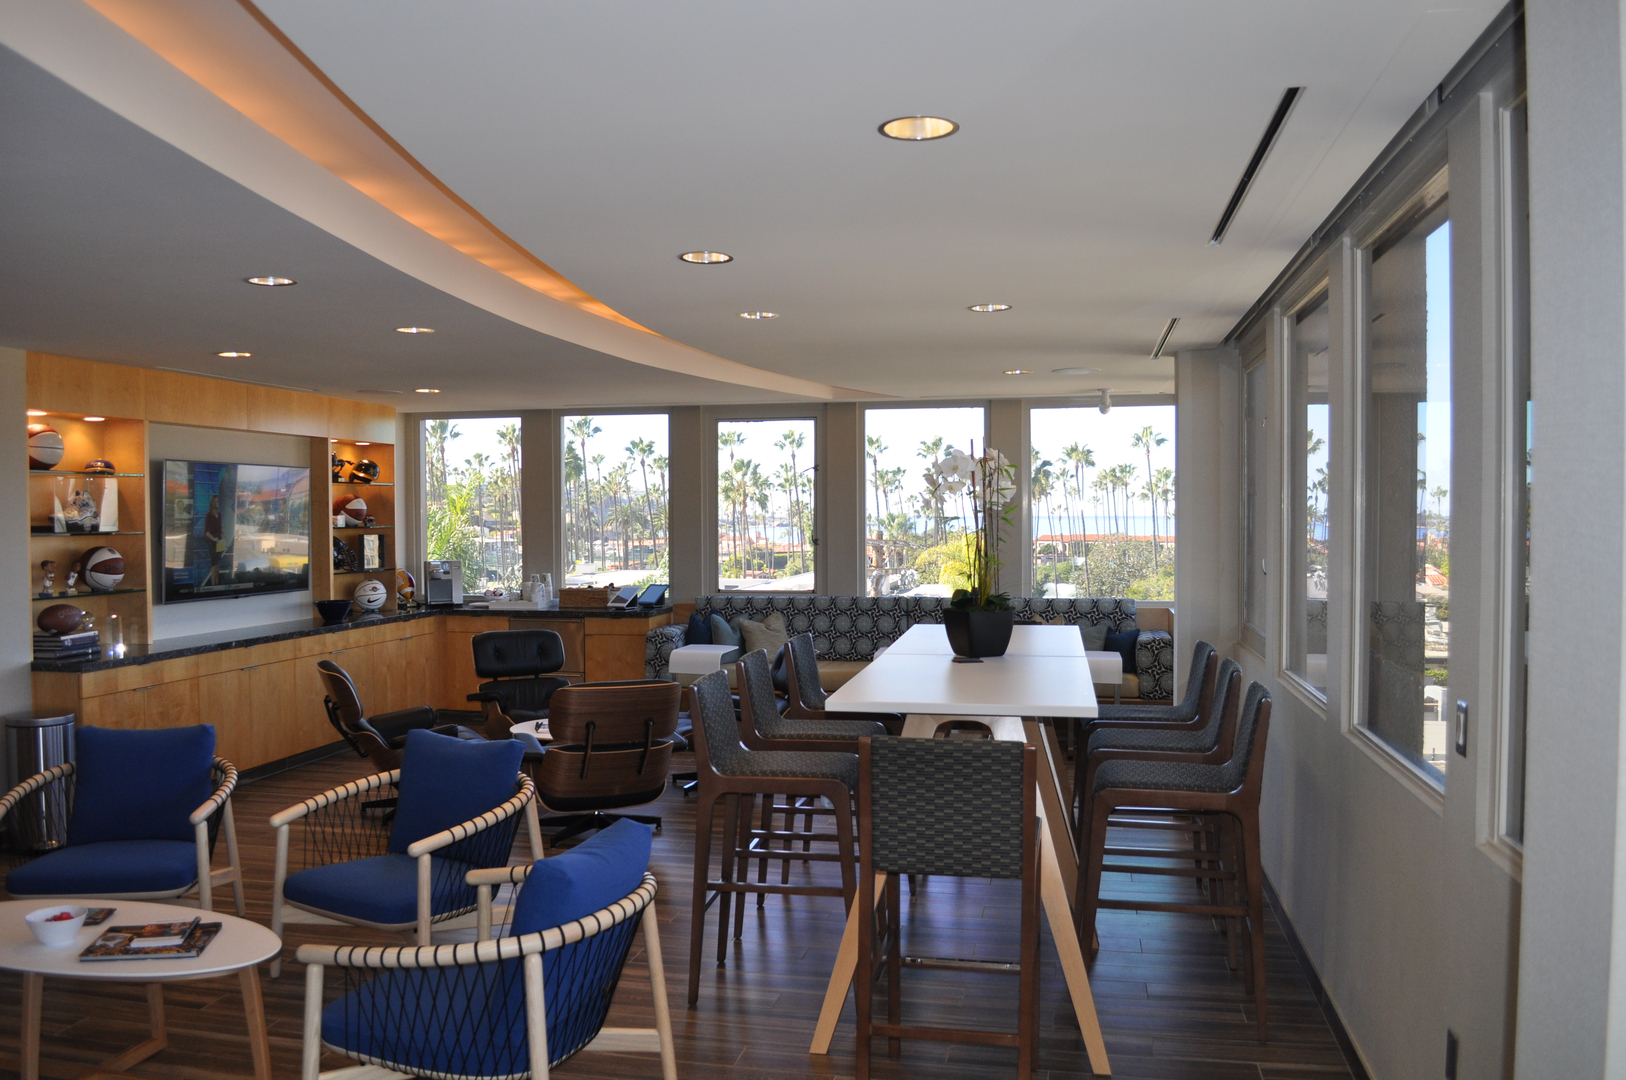 JBM Properties La Jolla Shores Plaza Suite 208 Tenant Improvements